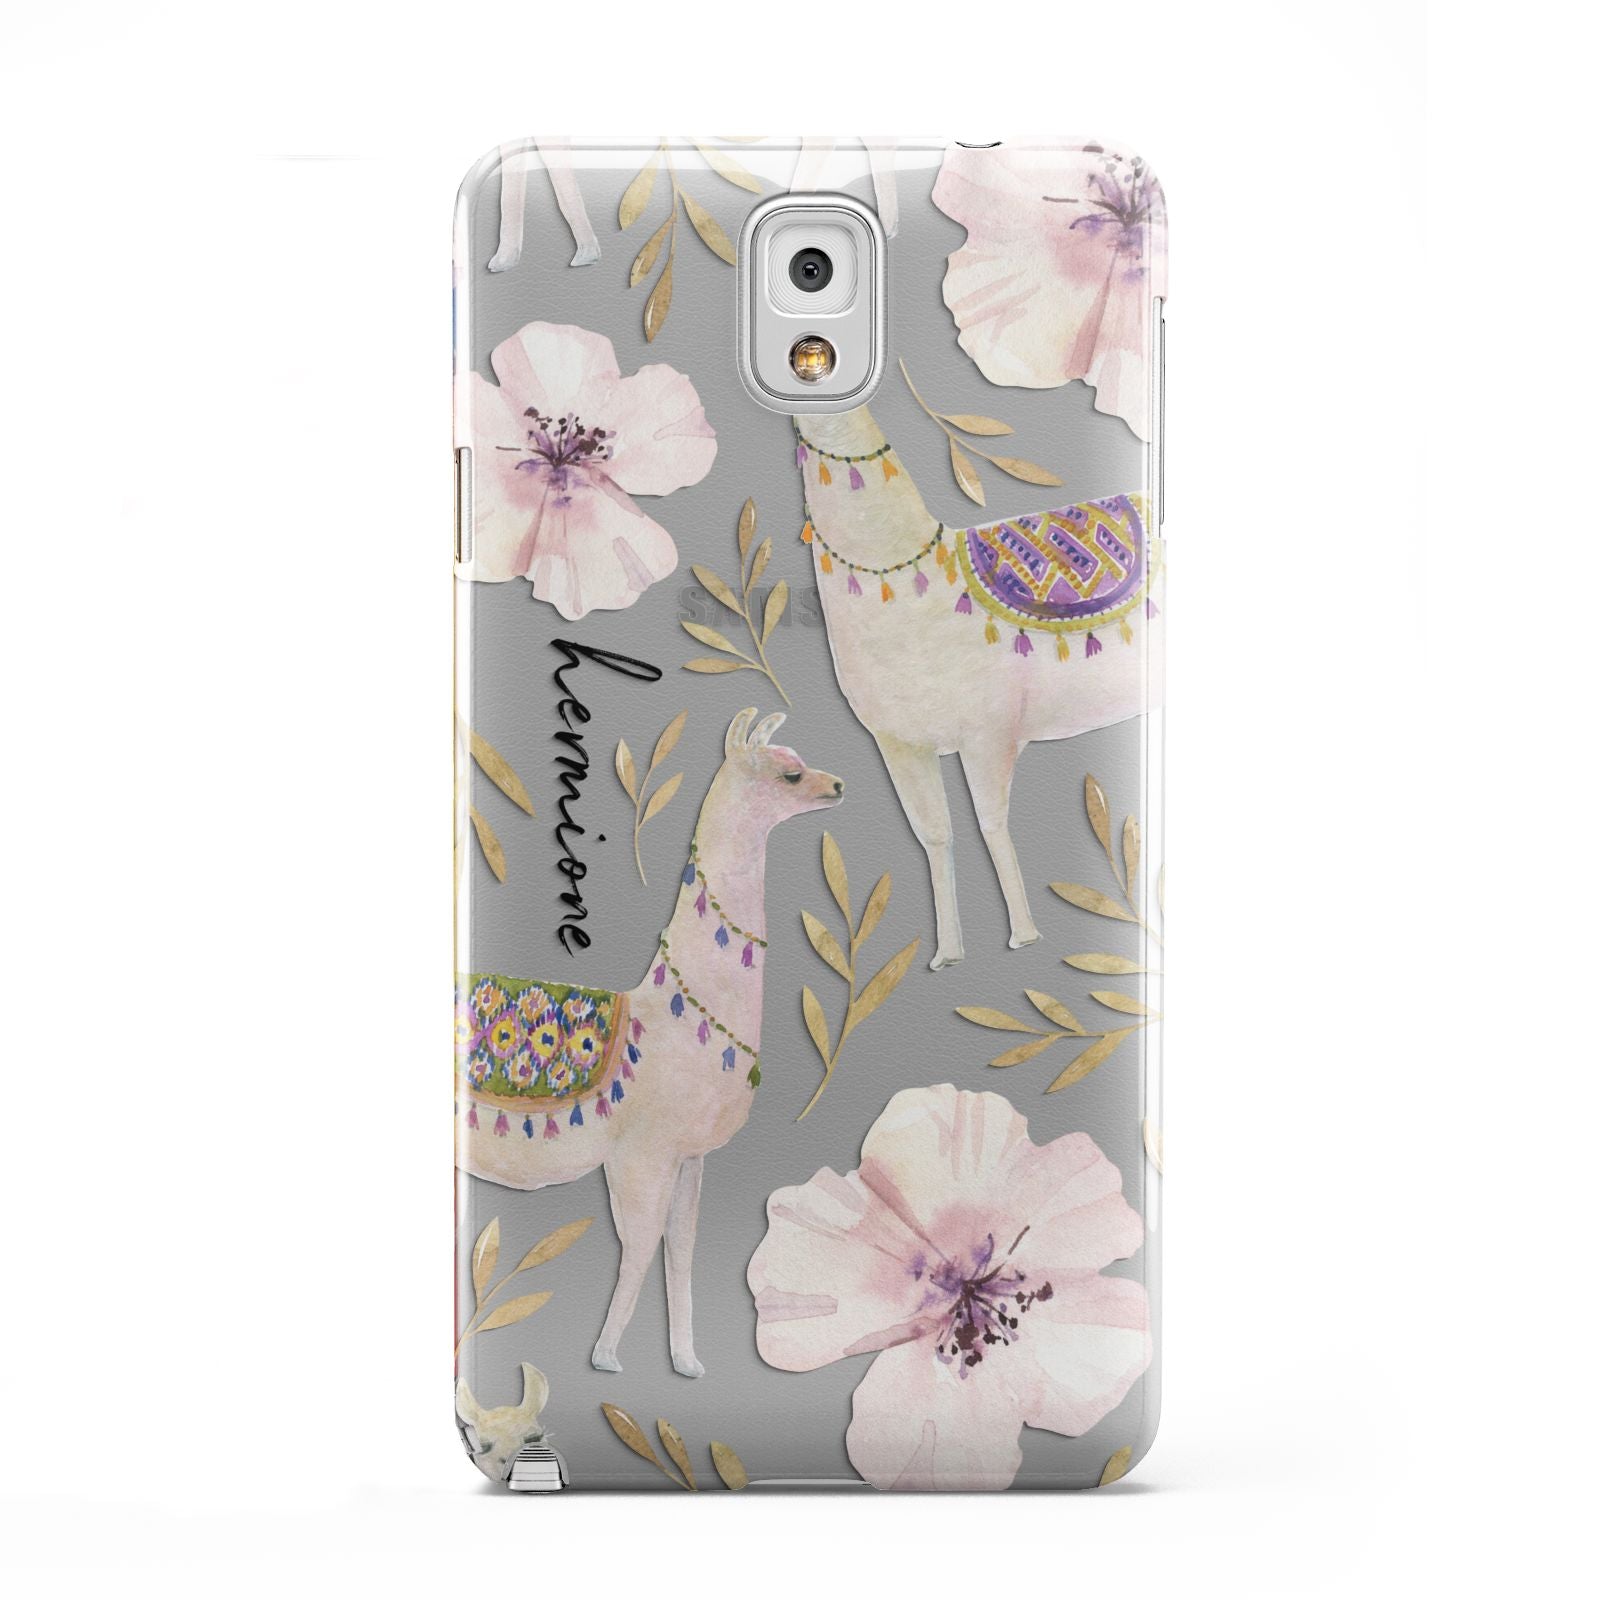 Personalised Llamas Samsung Galaxy Note 3 Case